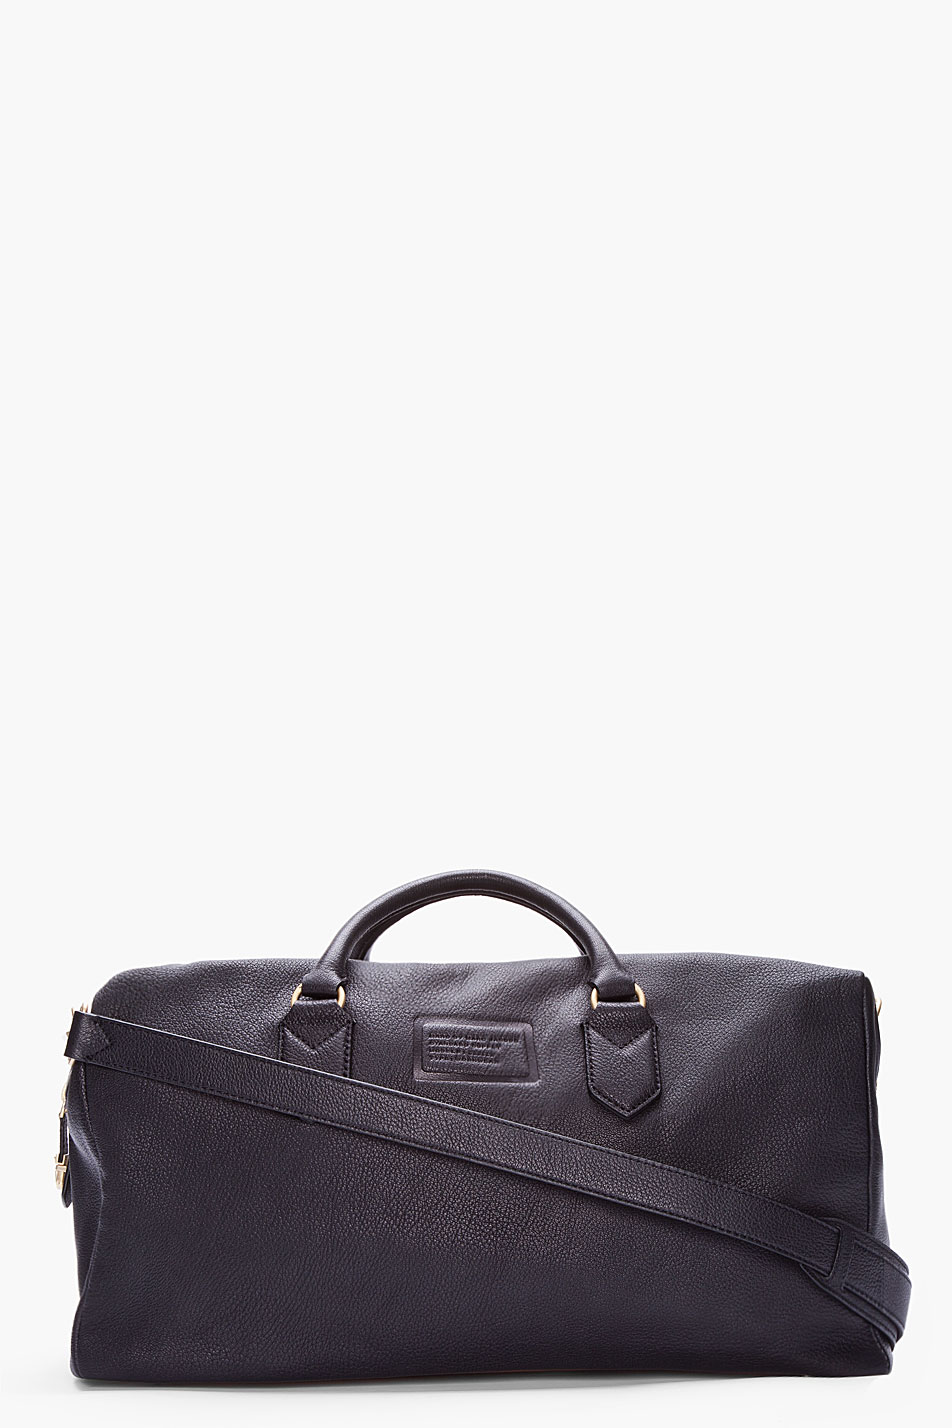 Lyst - Marc By Marc Jacobs Black Monsieur Marc Weekender Duffle Bag in ...